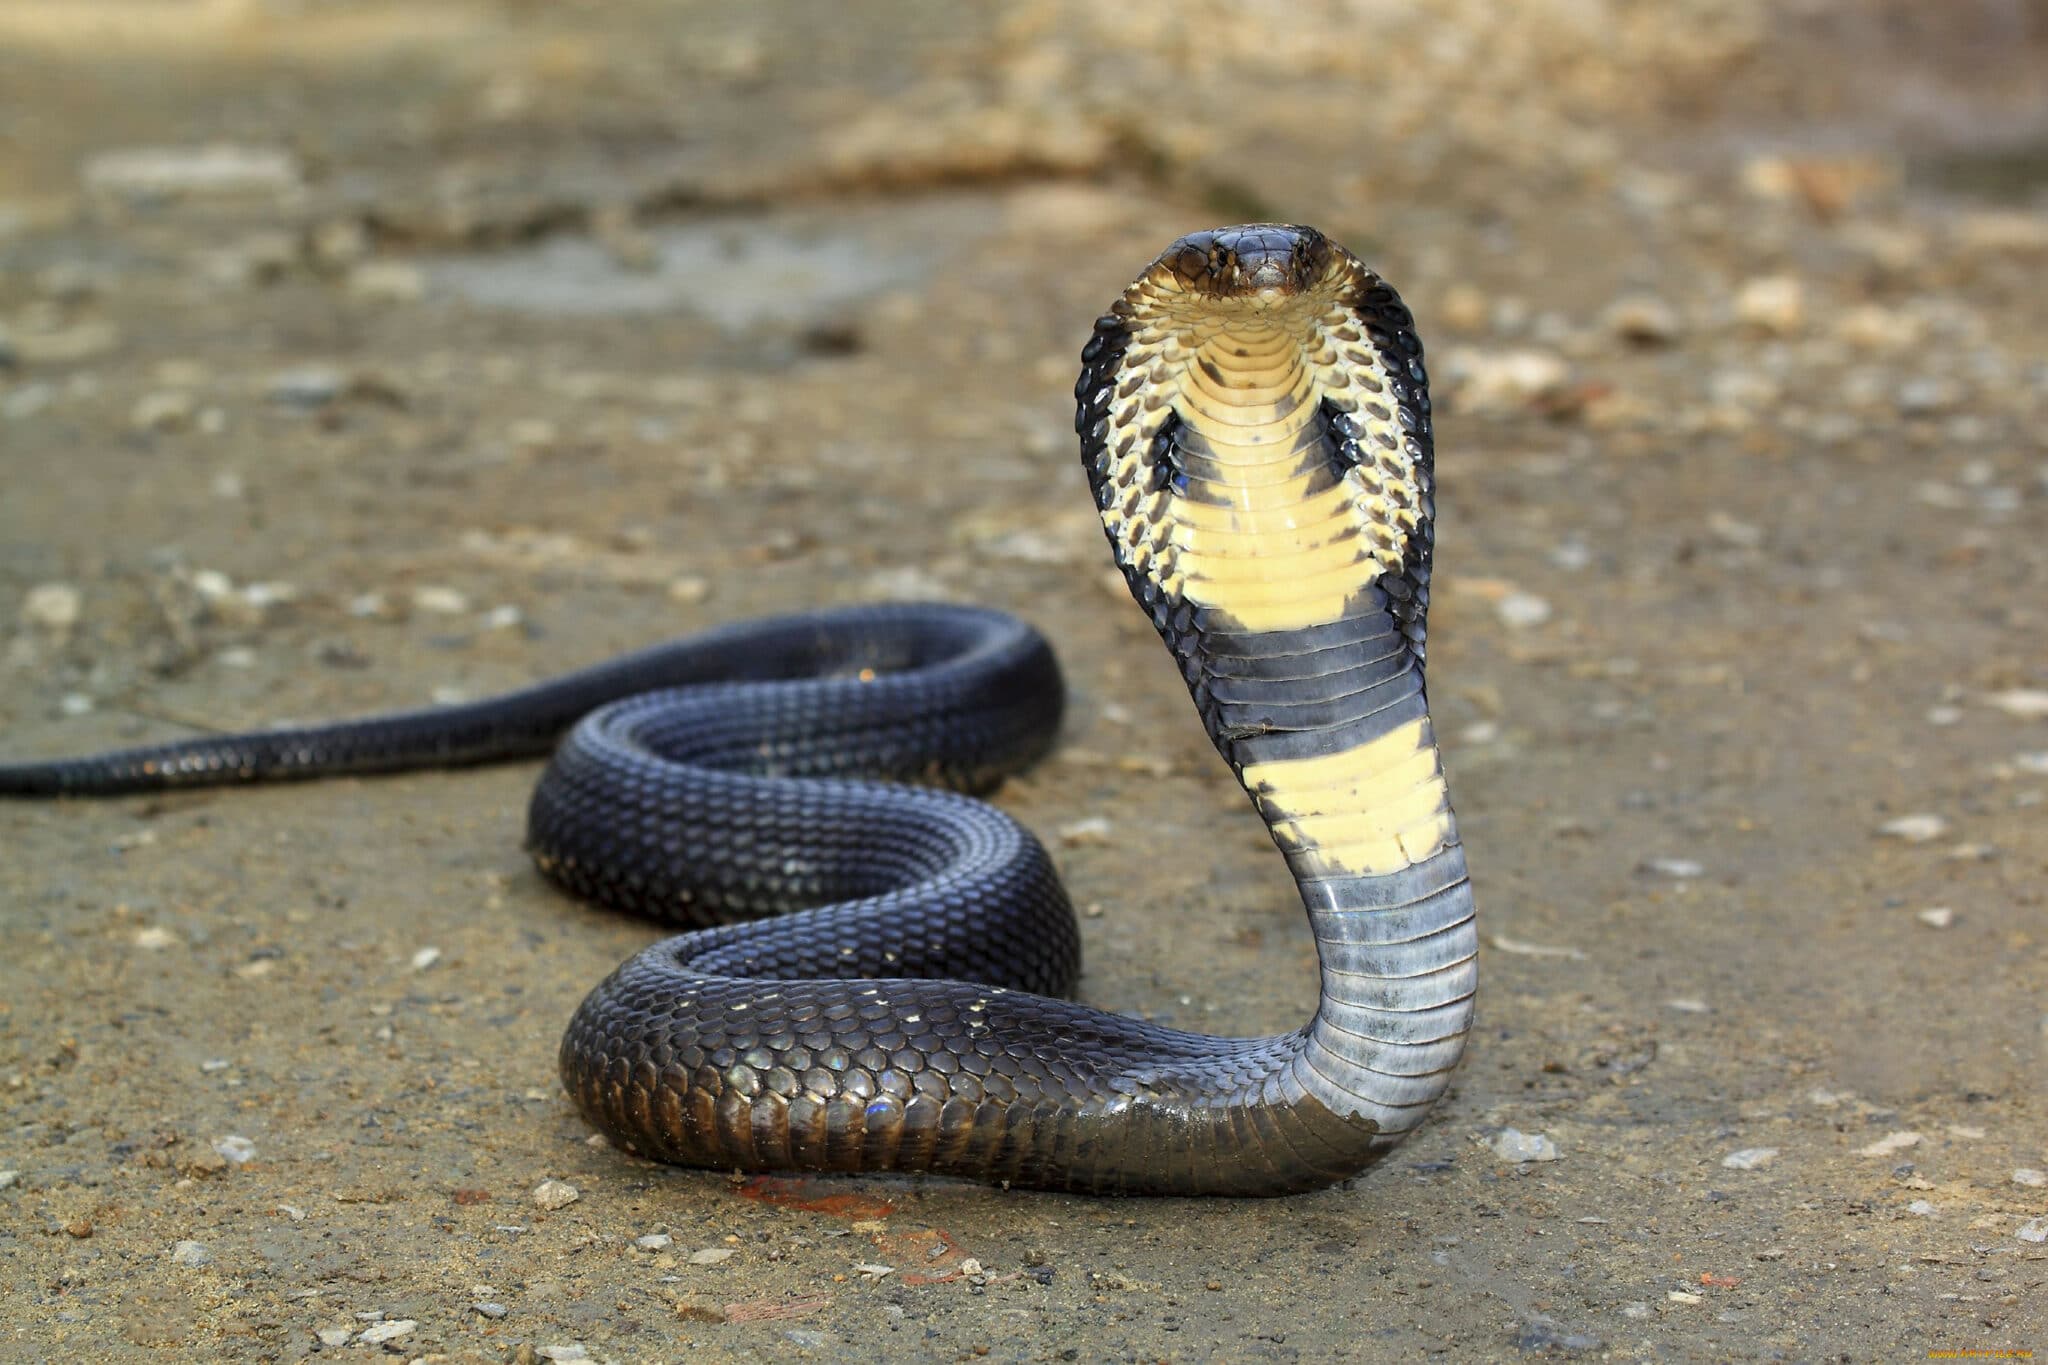 Змеиный яд и белок слюнных желез млекопитающих возникли от общих генов